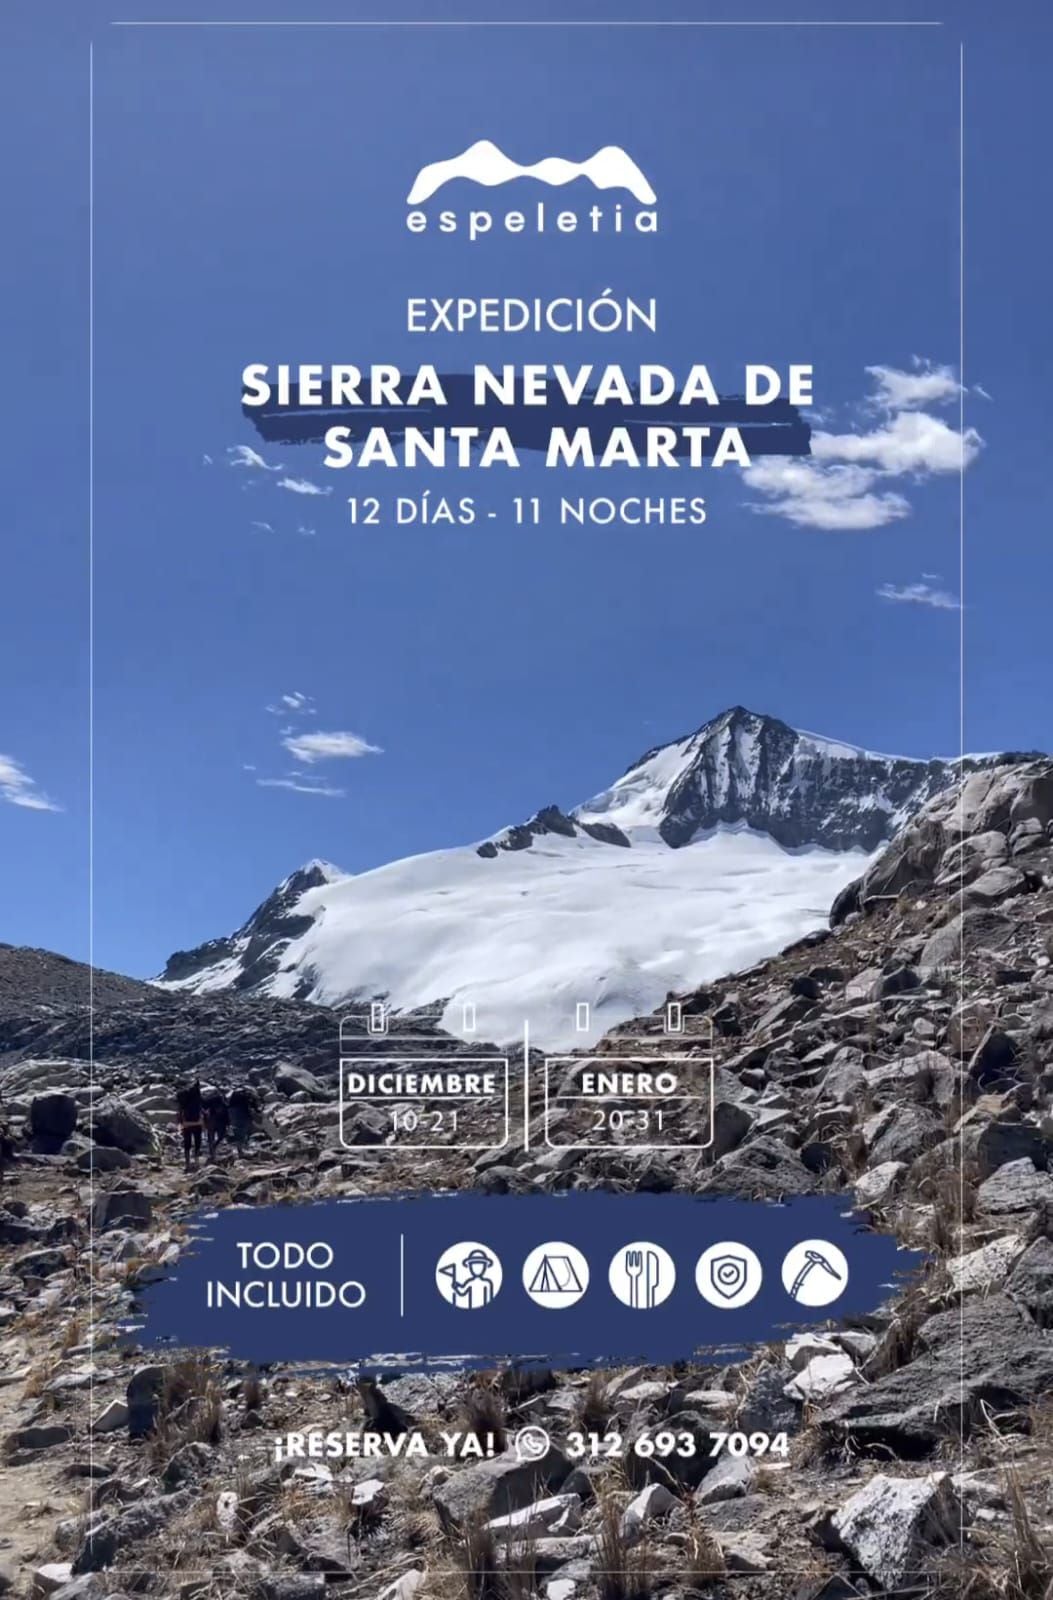 Esta era la expedición a la Sierra Nevada de Santa Marta ofrecida por Espeletia Adventures en la que se accidentó el cocinero contratado por la empresa turística.